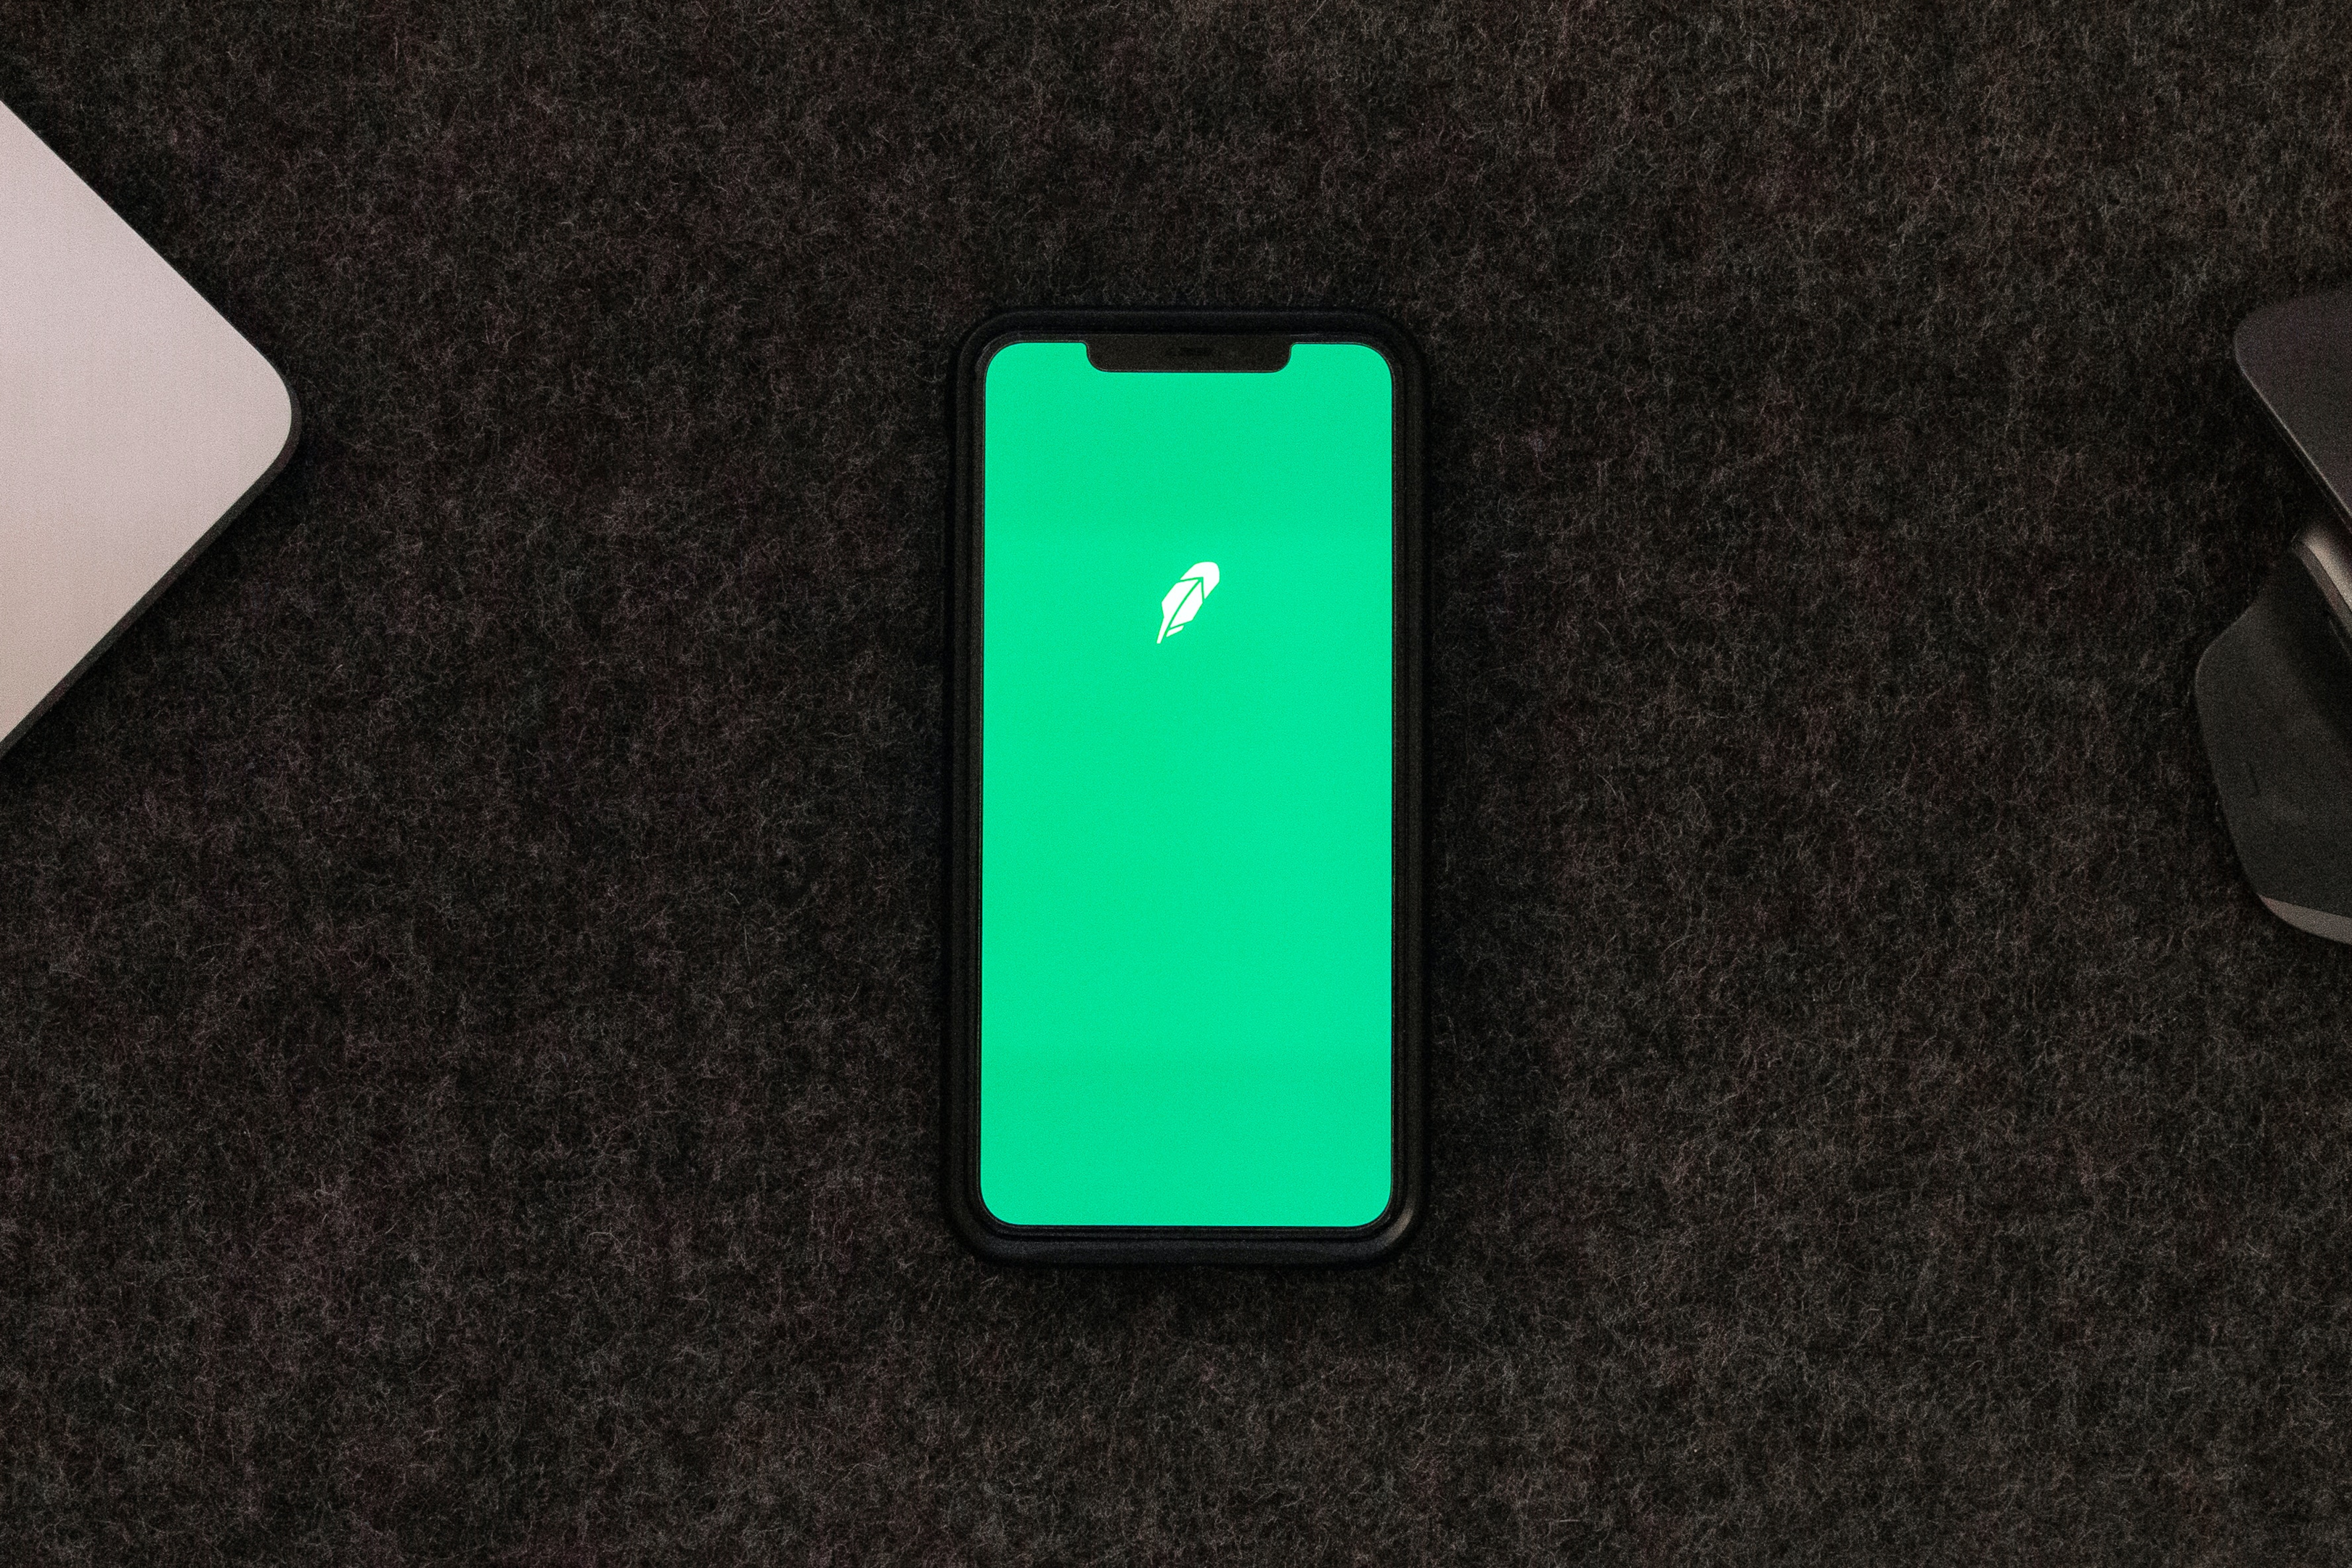 Robin Hood app on a phone